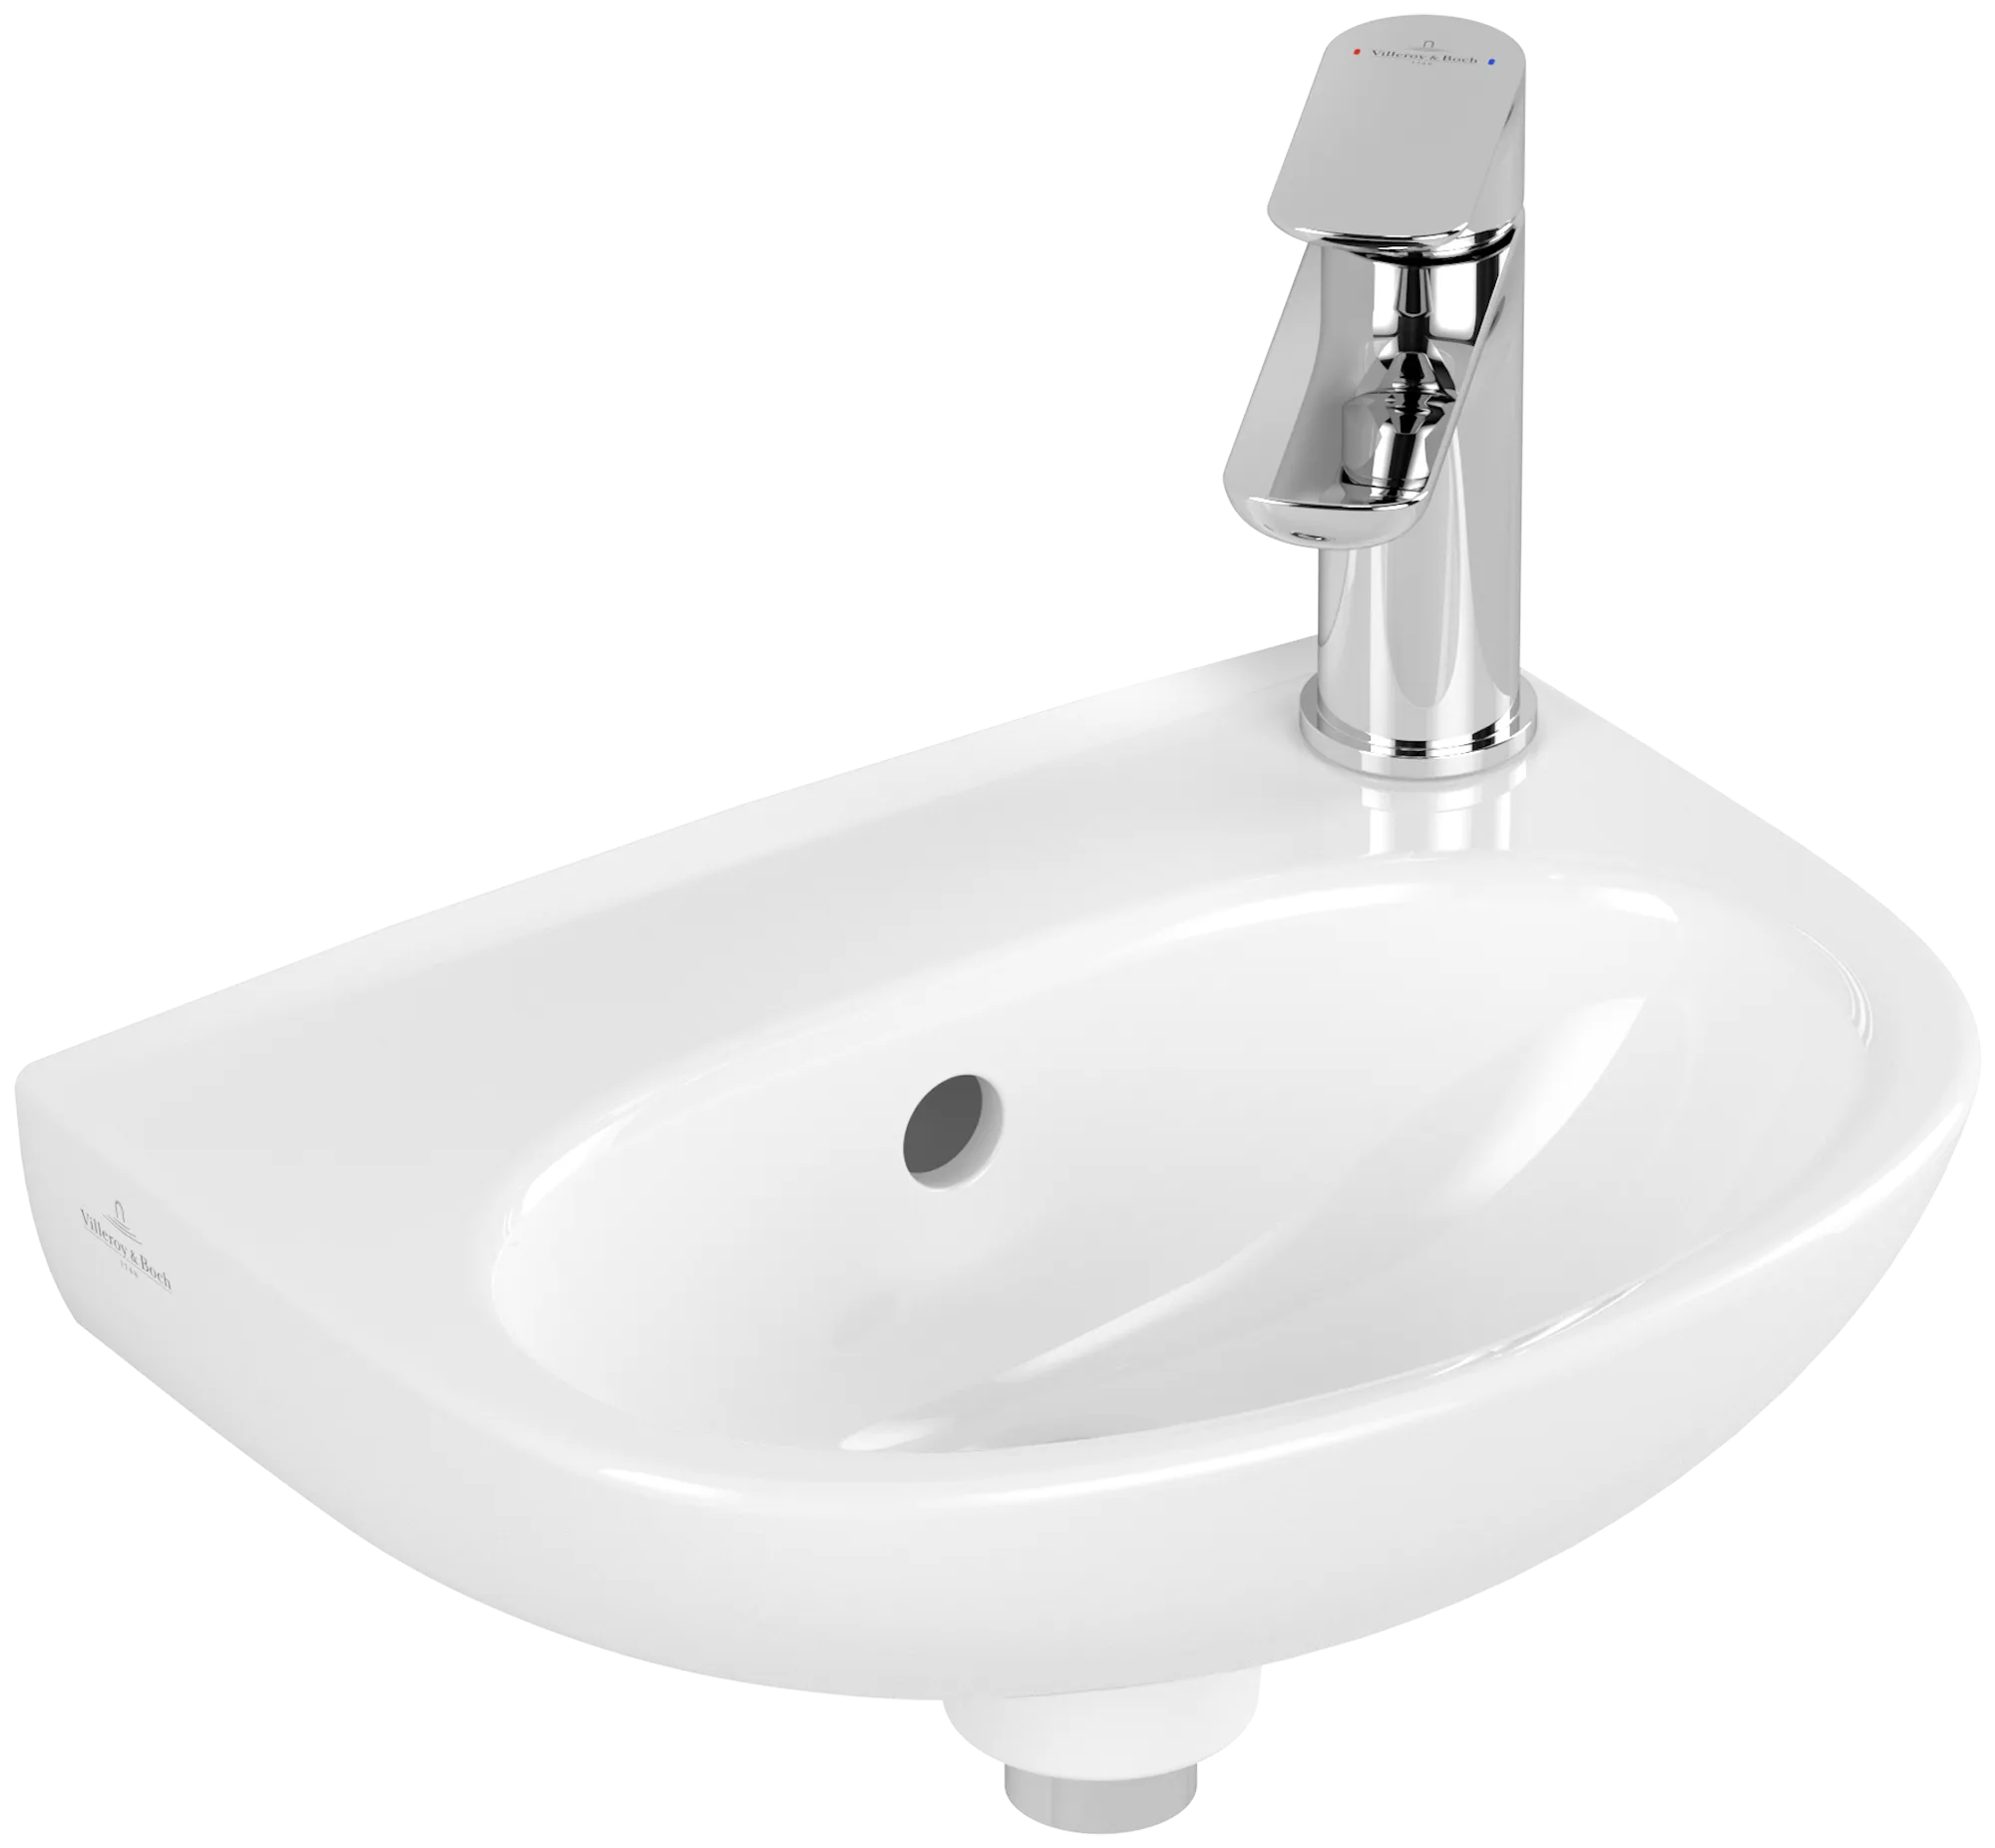 Bild von VILLEROY BOCH O.novo Handwaschbecken, 360 x 275 x 145 mm, Weiß Alpin, mit Überlauf #43403601